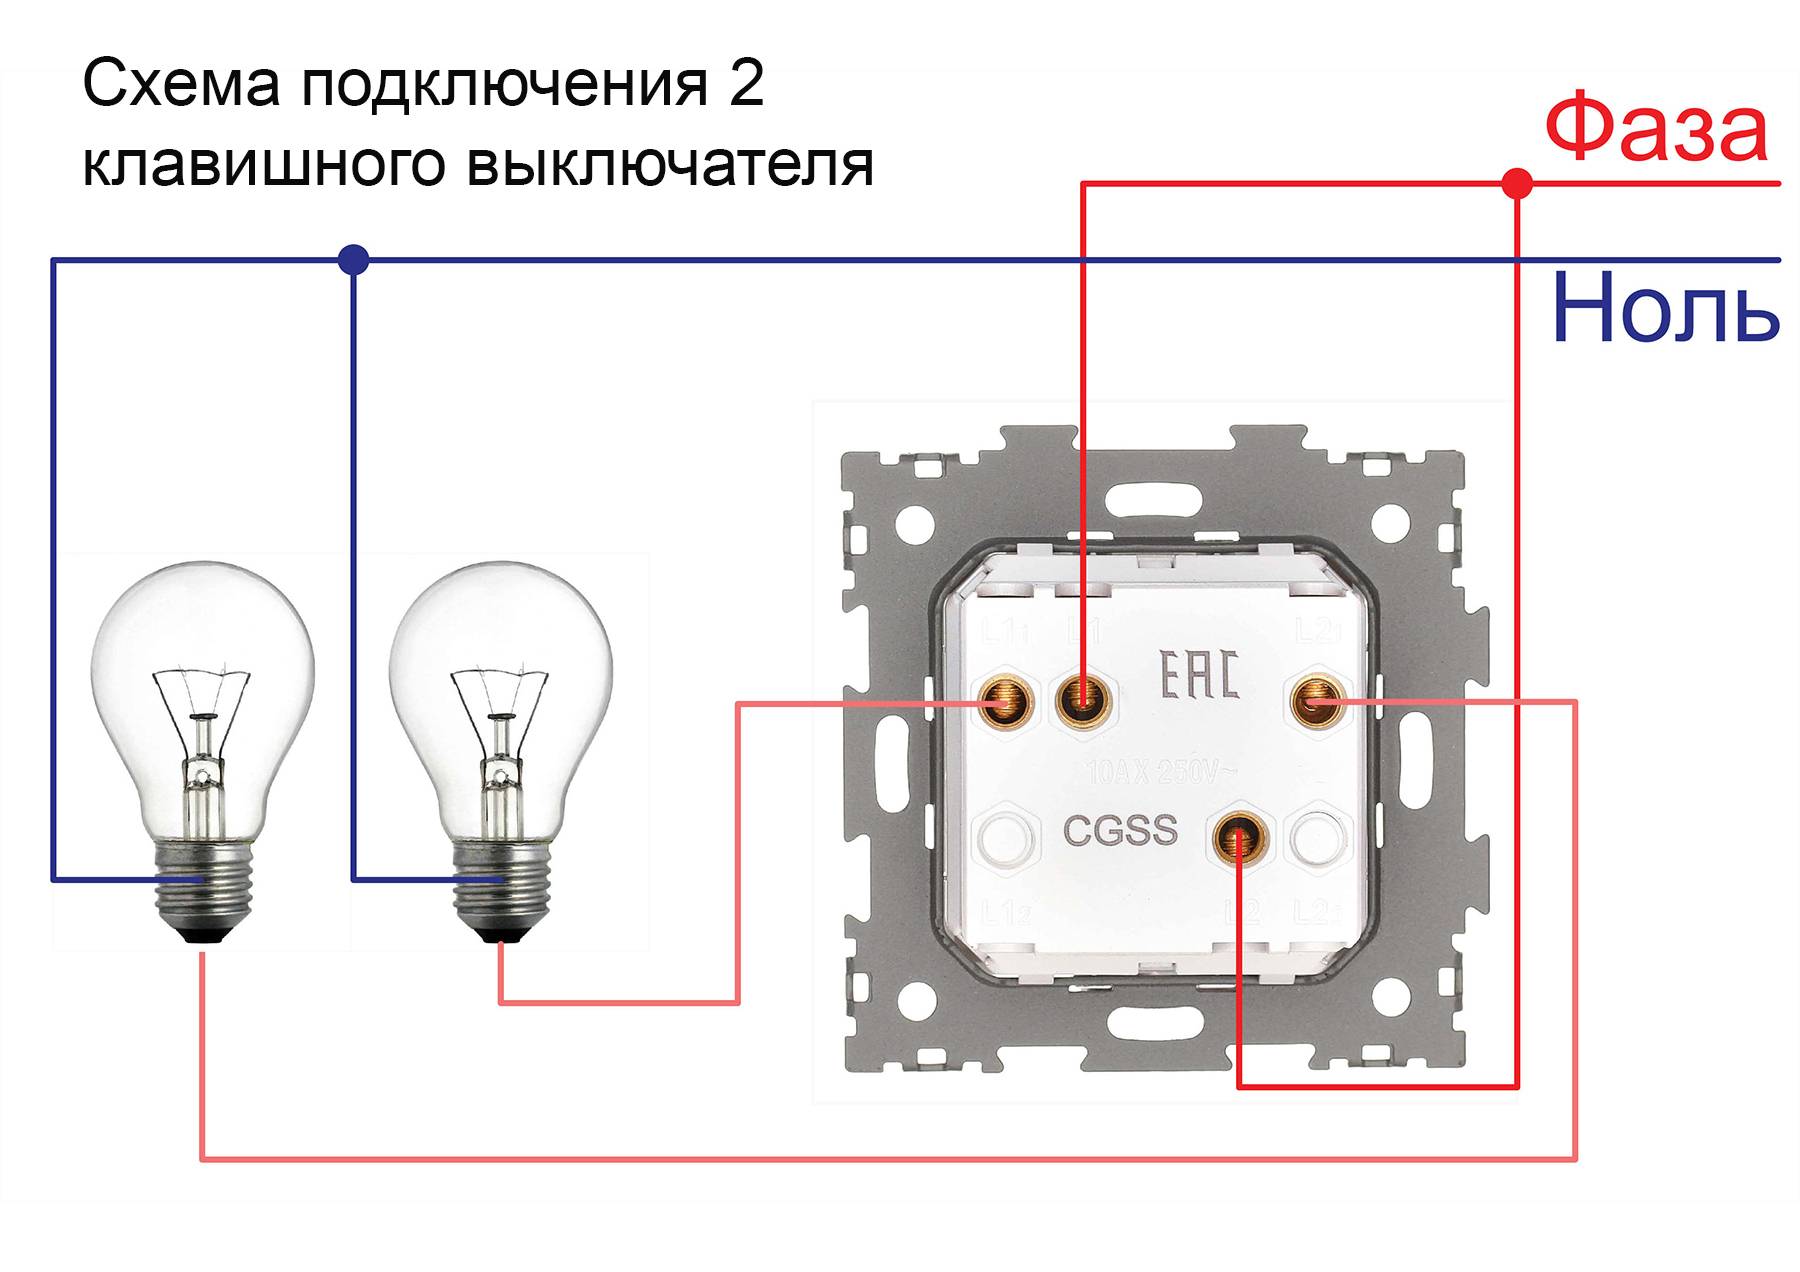 Особенности монтажа двухклавишного выключателя для скрытой проводки